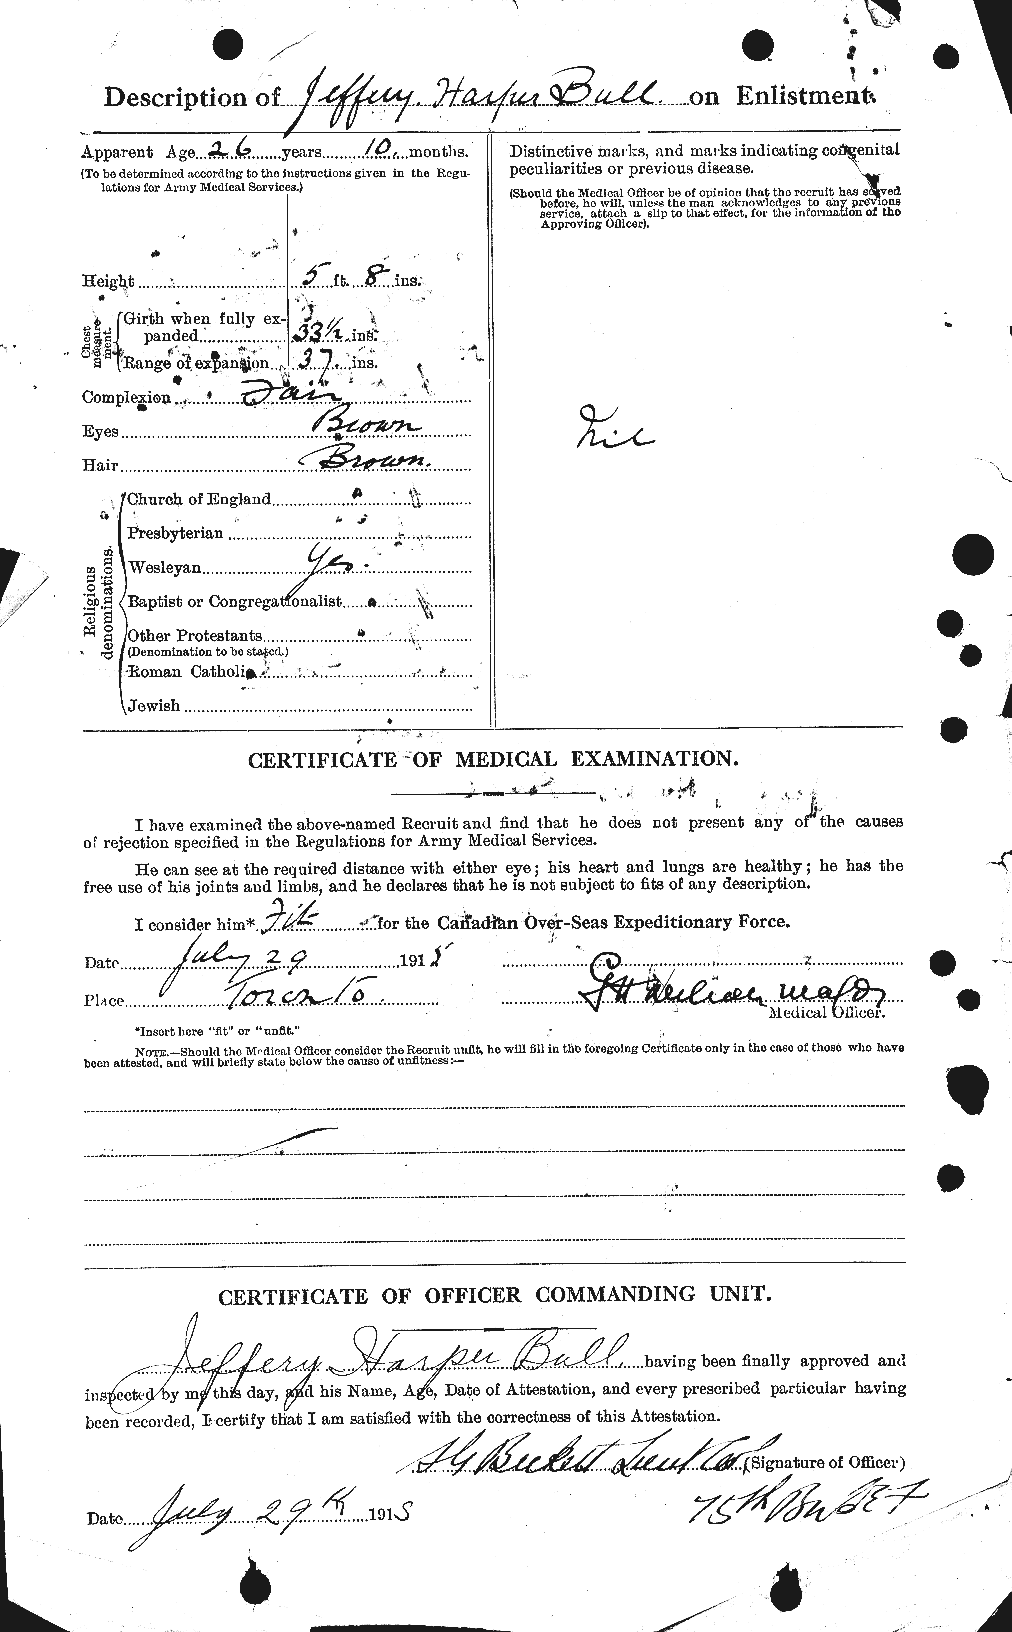 Dossiers du Personnel de la Première Guerre mondiale - CEC 273418b